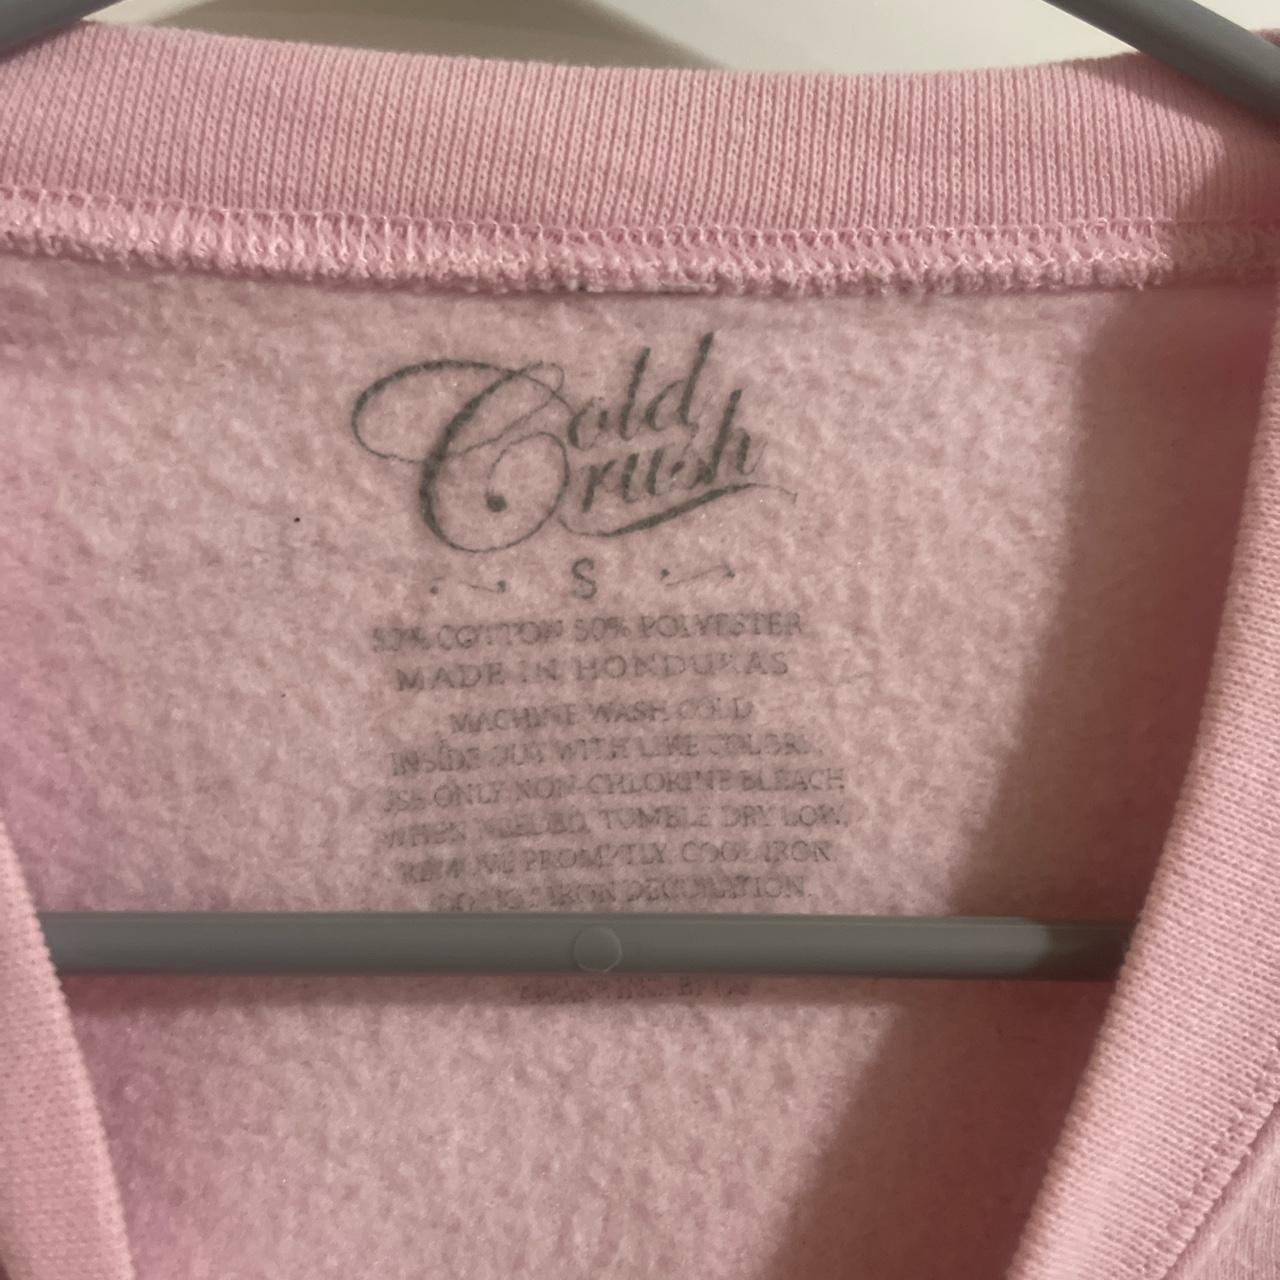 Cold Crush Women's Pink Sweatshirt (2)